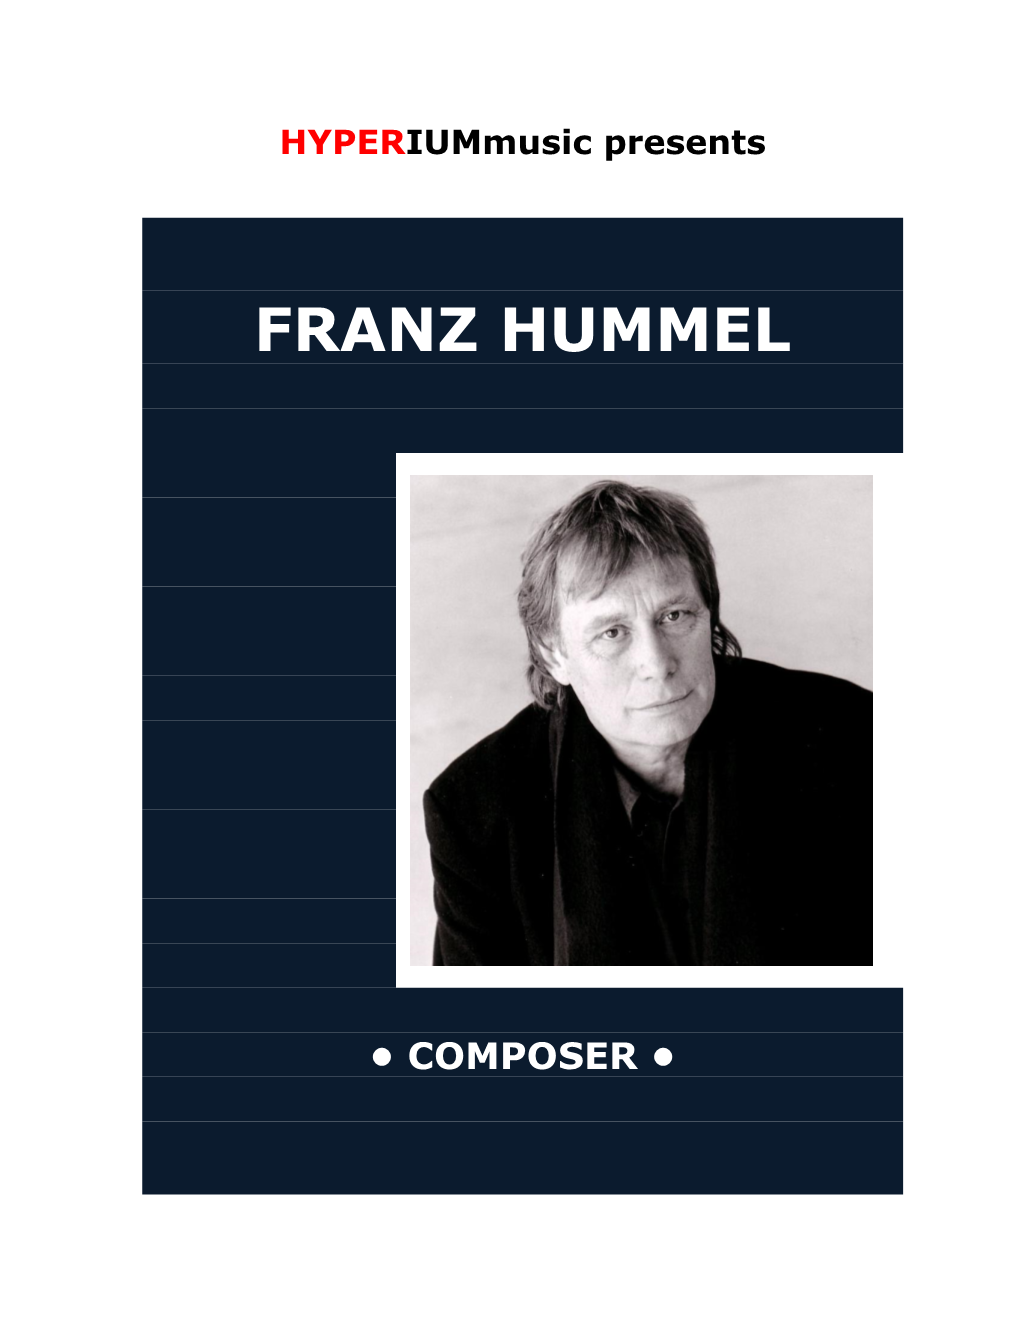 Franz Hummel